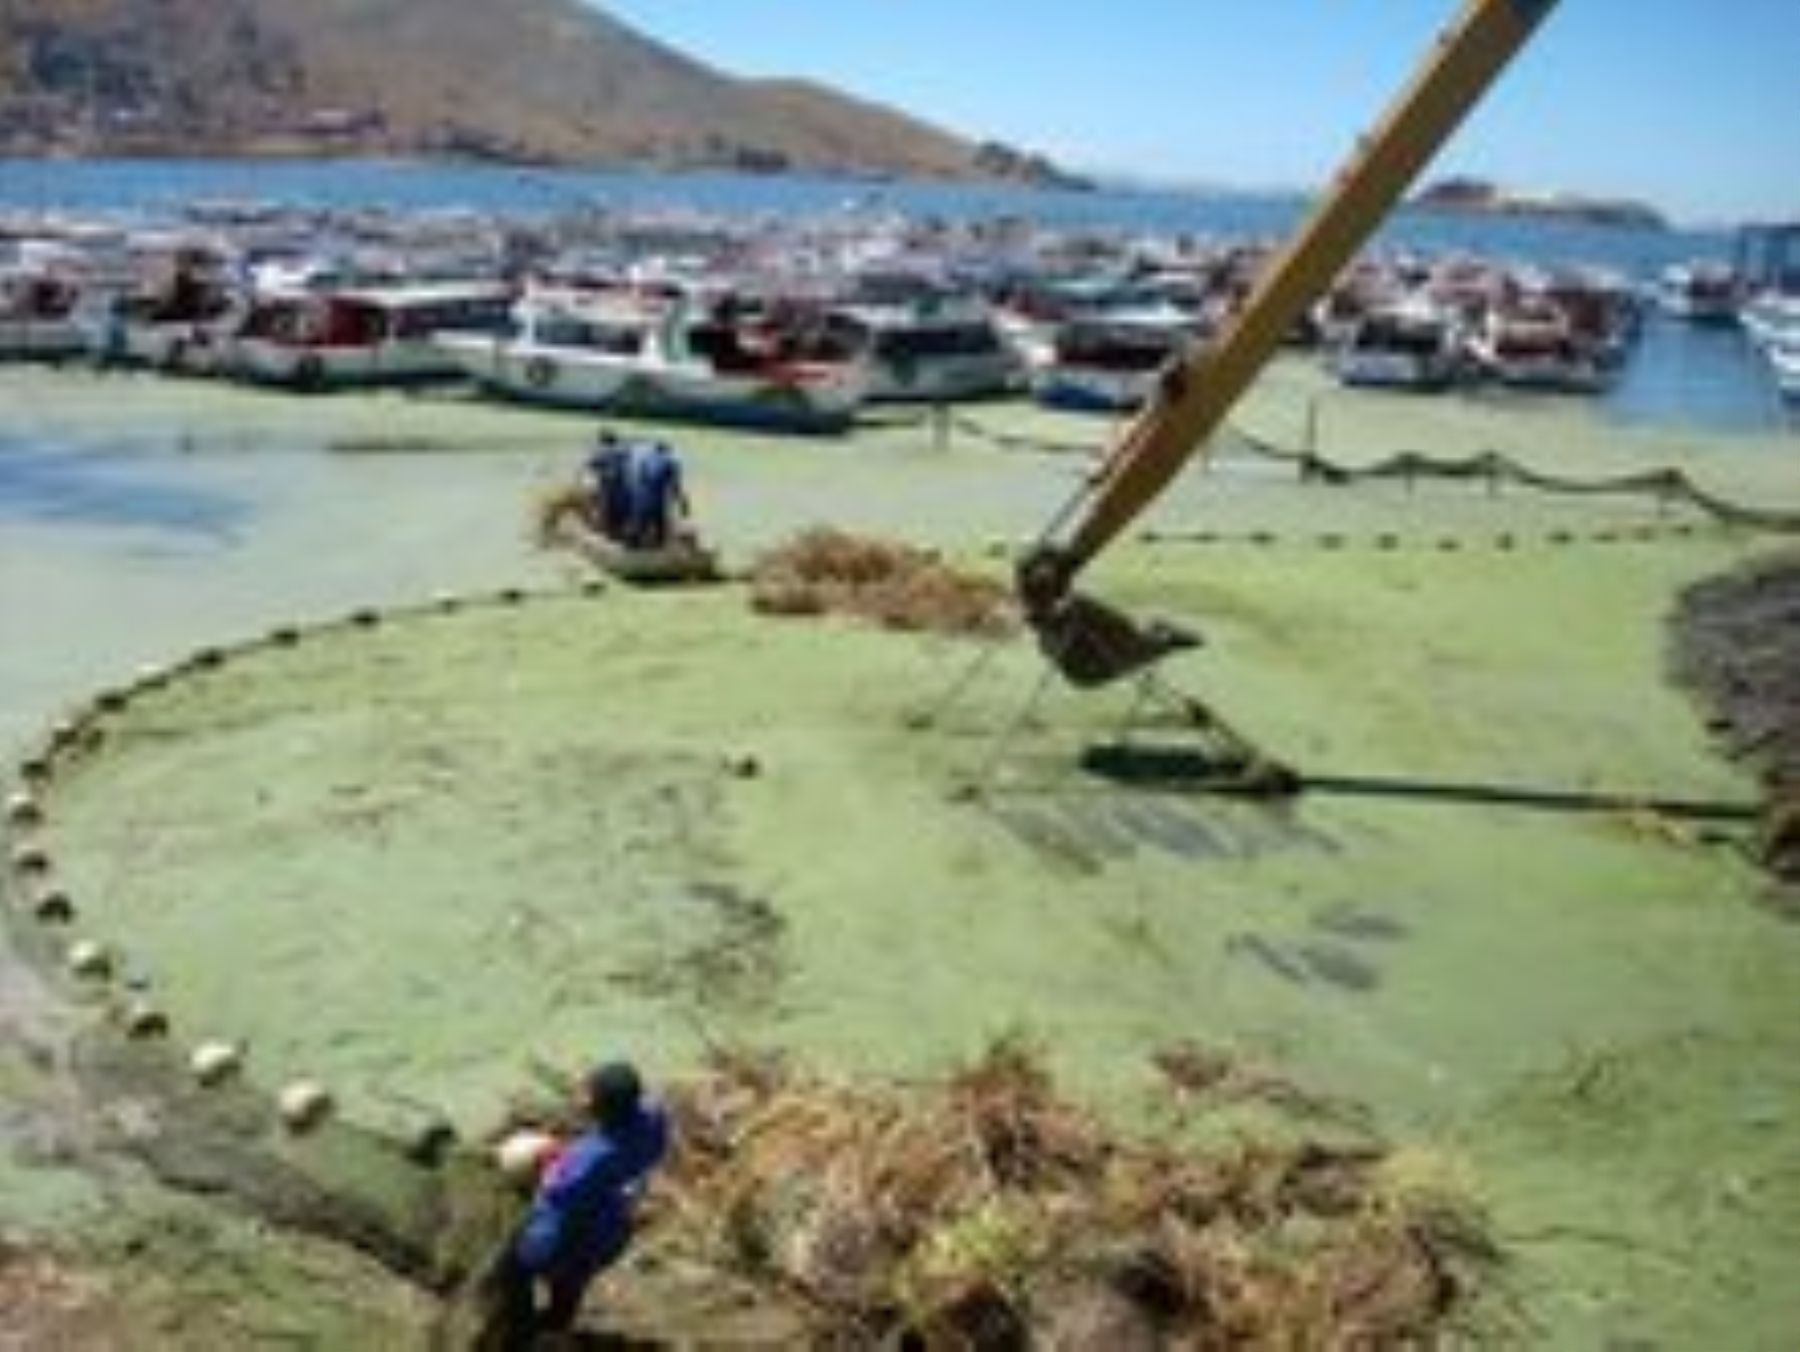 La bahía interior del lago Titicaca presenta altos niveles de contaminación, revela la ANA.